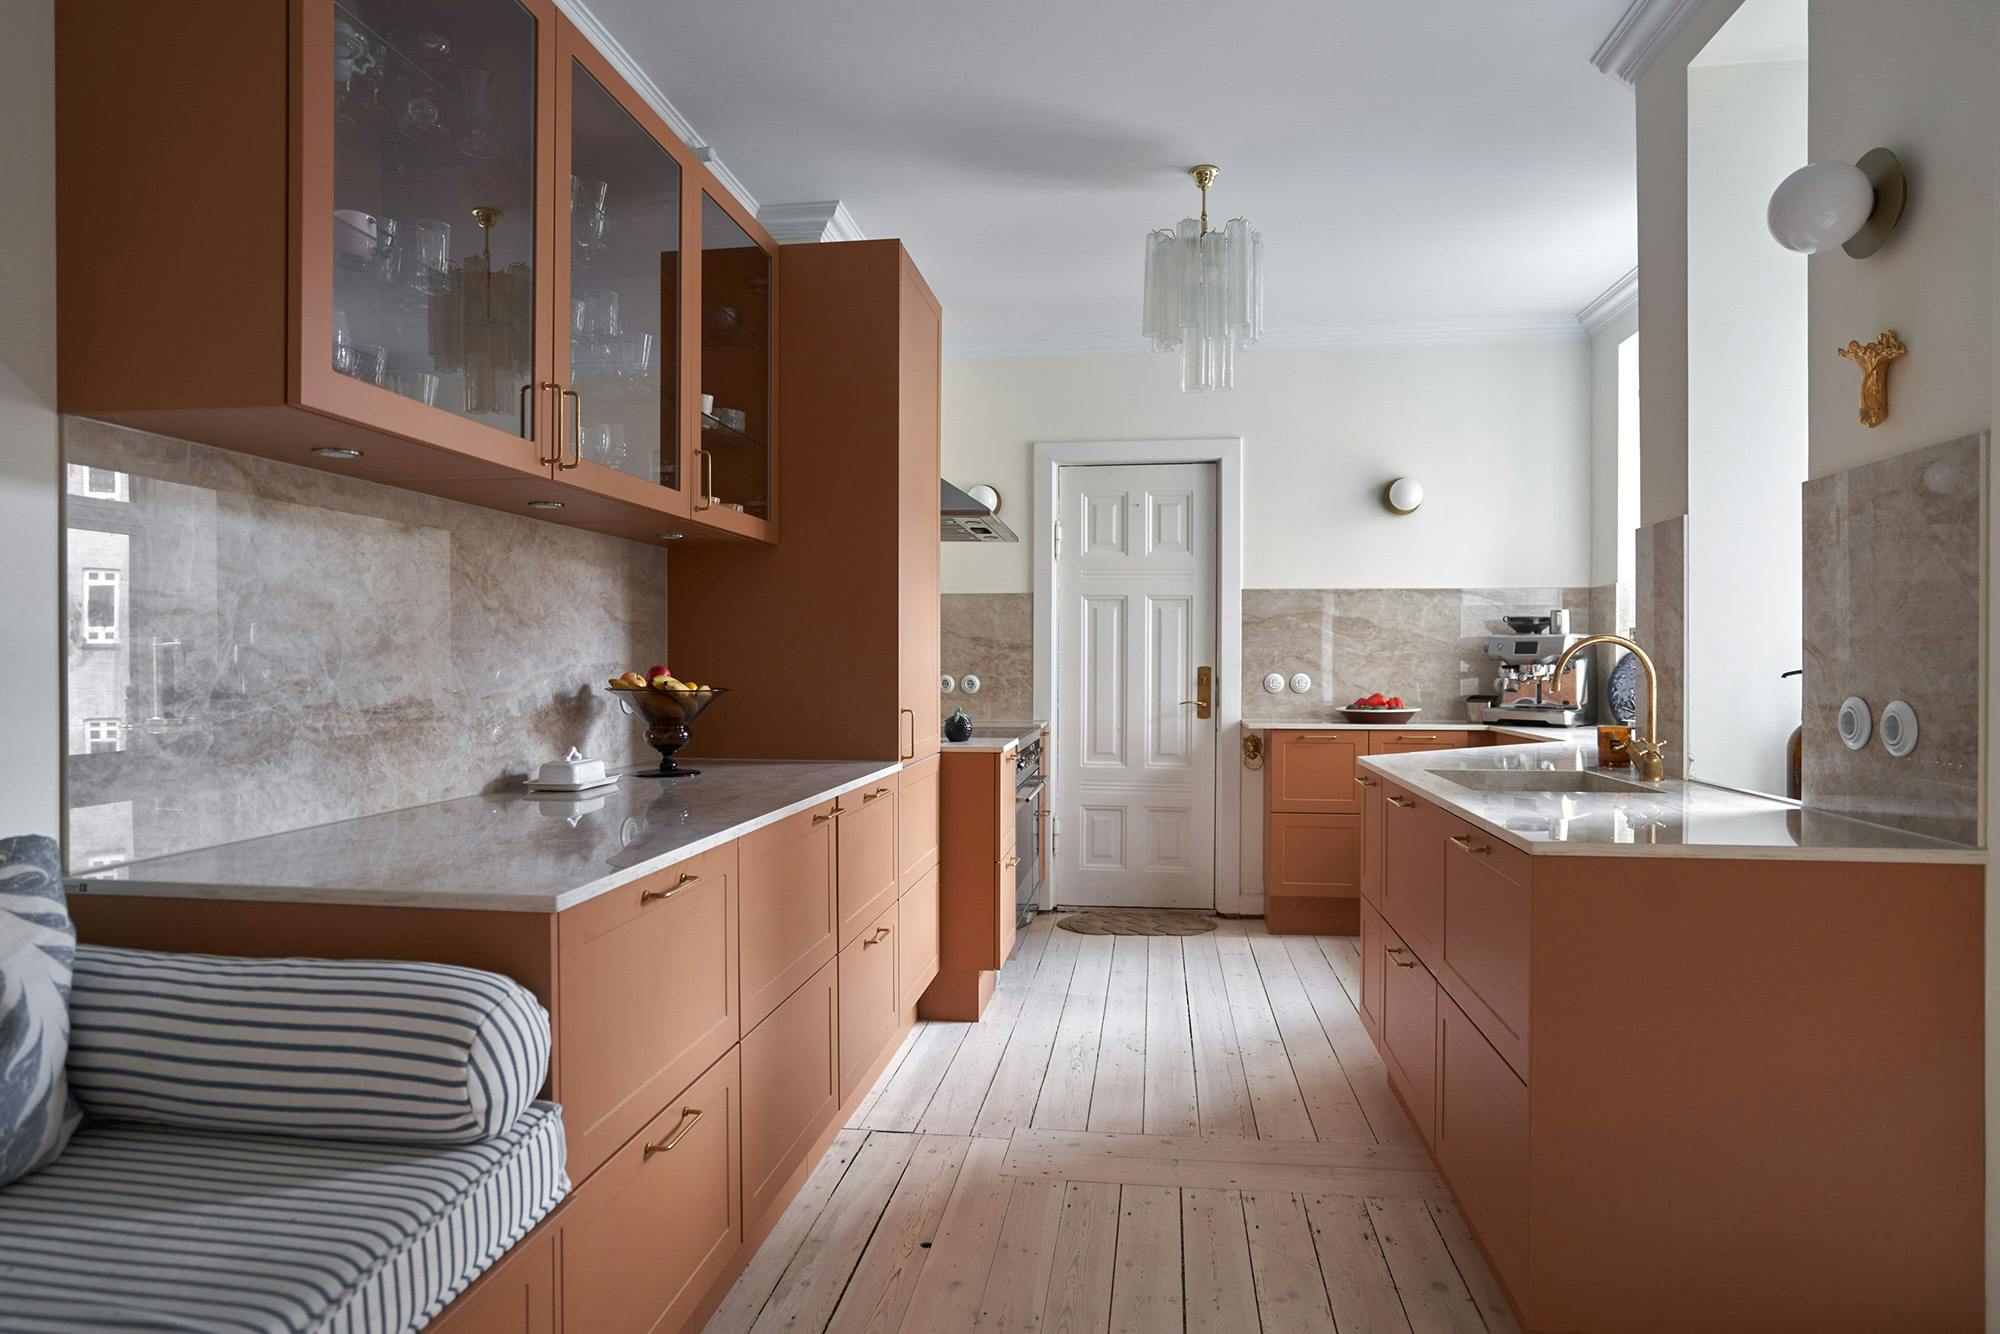 Numero immagine 32 della sezione corrente di Dekton Arga creates an elegant atmosphere in this open plan kitchen with a minimalist approach di Cosentino Italia